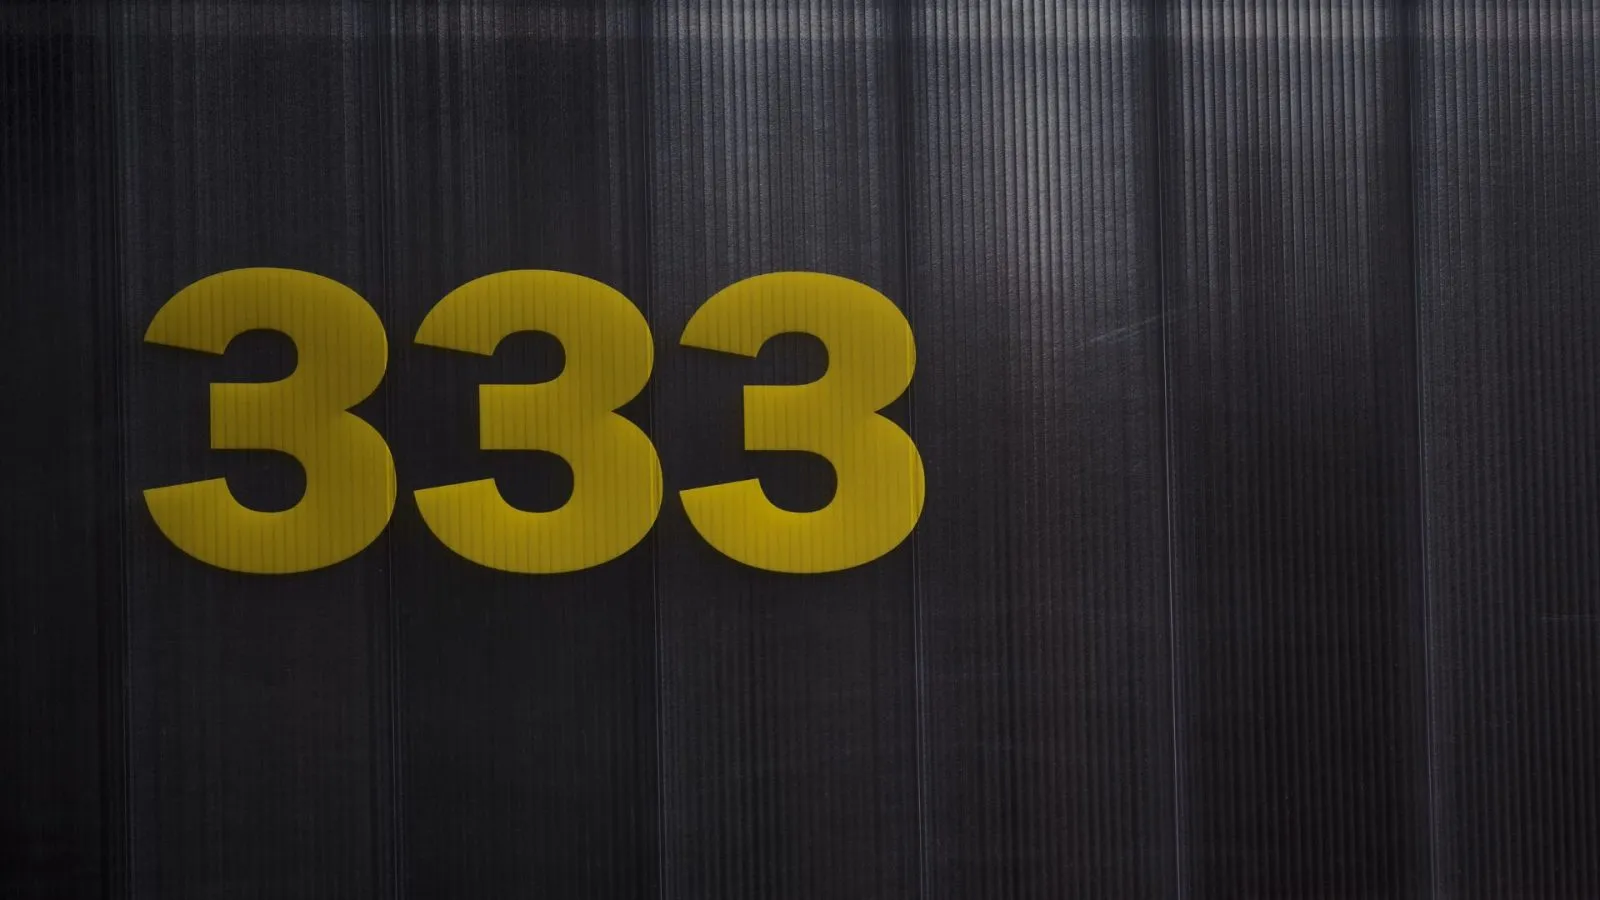 333 door apartment number